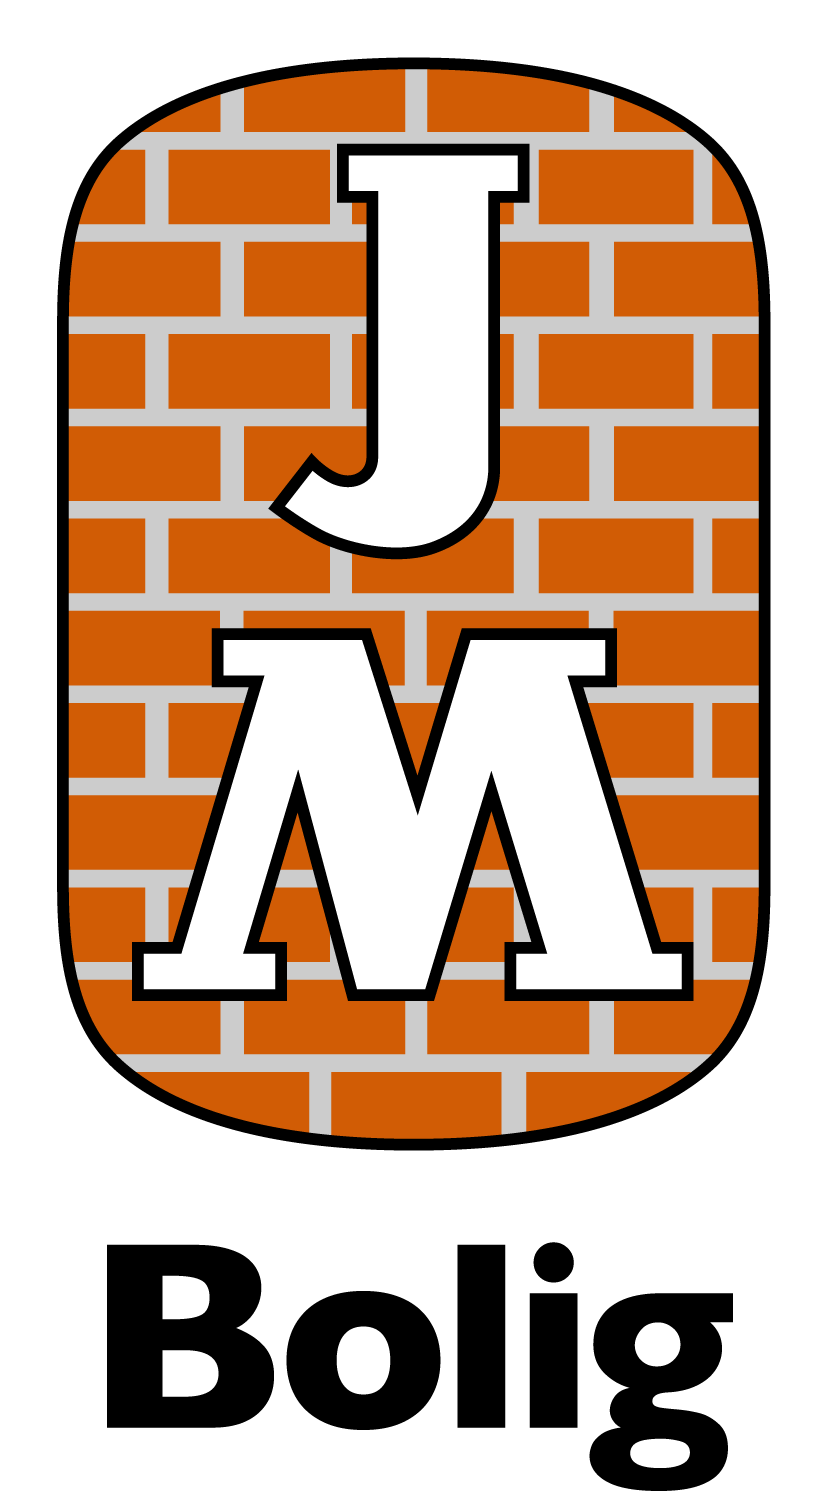 JM Norge